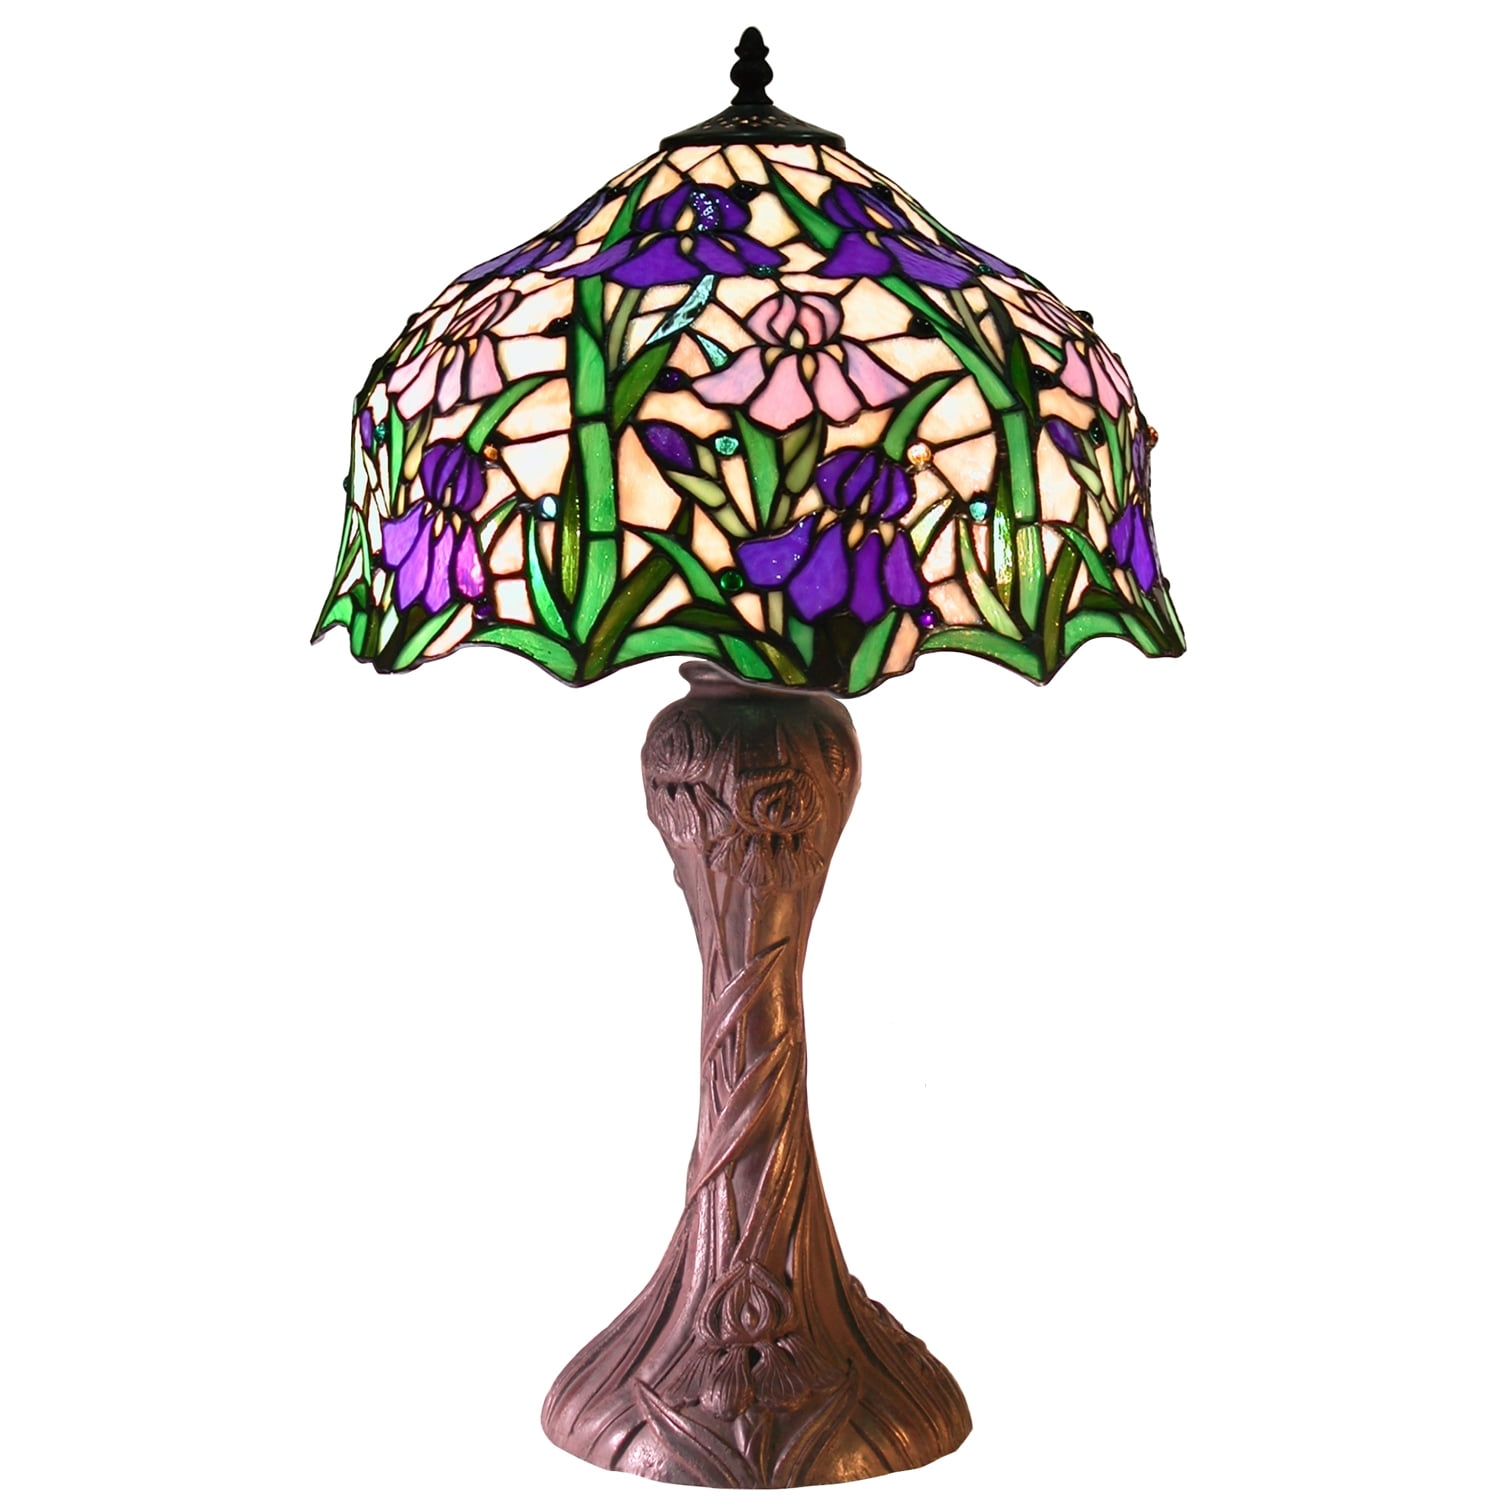 Vervelend Registratie Verrijking Tiffany-style Iris Table Lamp - Walmart.com